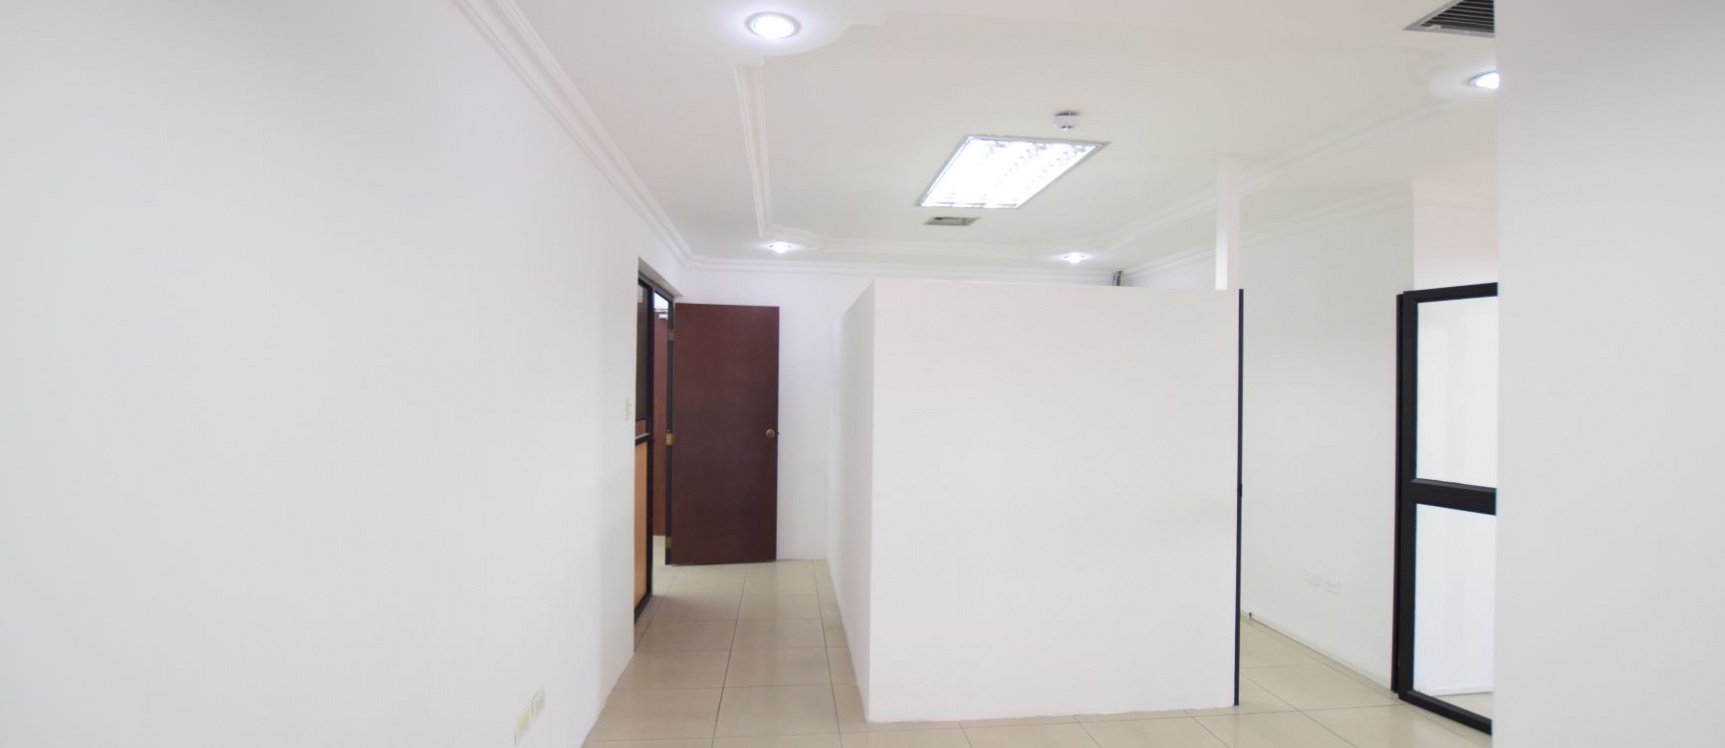 GeoBienes - Oficina en alquiler en el Centro Comercial Las Vitrinas, Norte de Guayaquil - Plusvalia Guayaquil Casas de venta y alquiler Inmobiliaria Ecuador